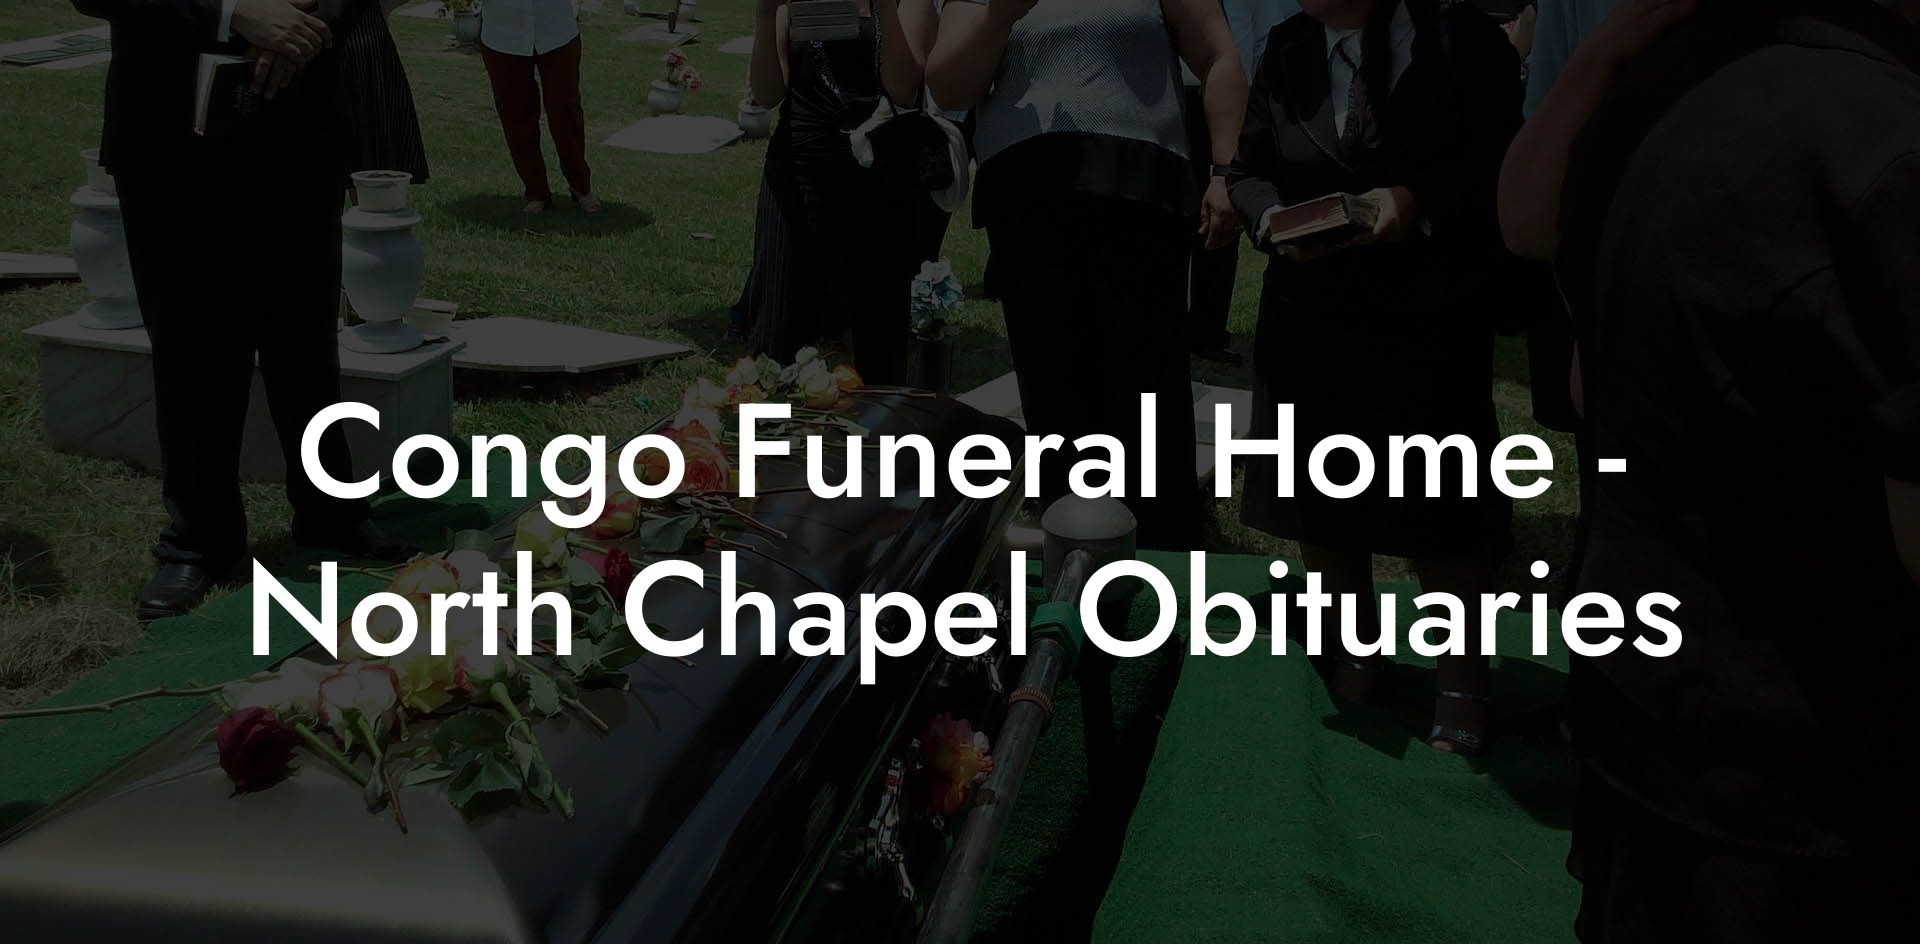 Congo Funeral Home - North Chapel Obituaries